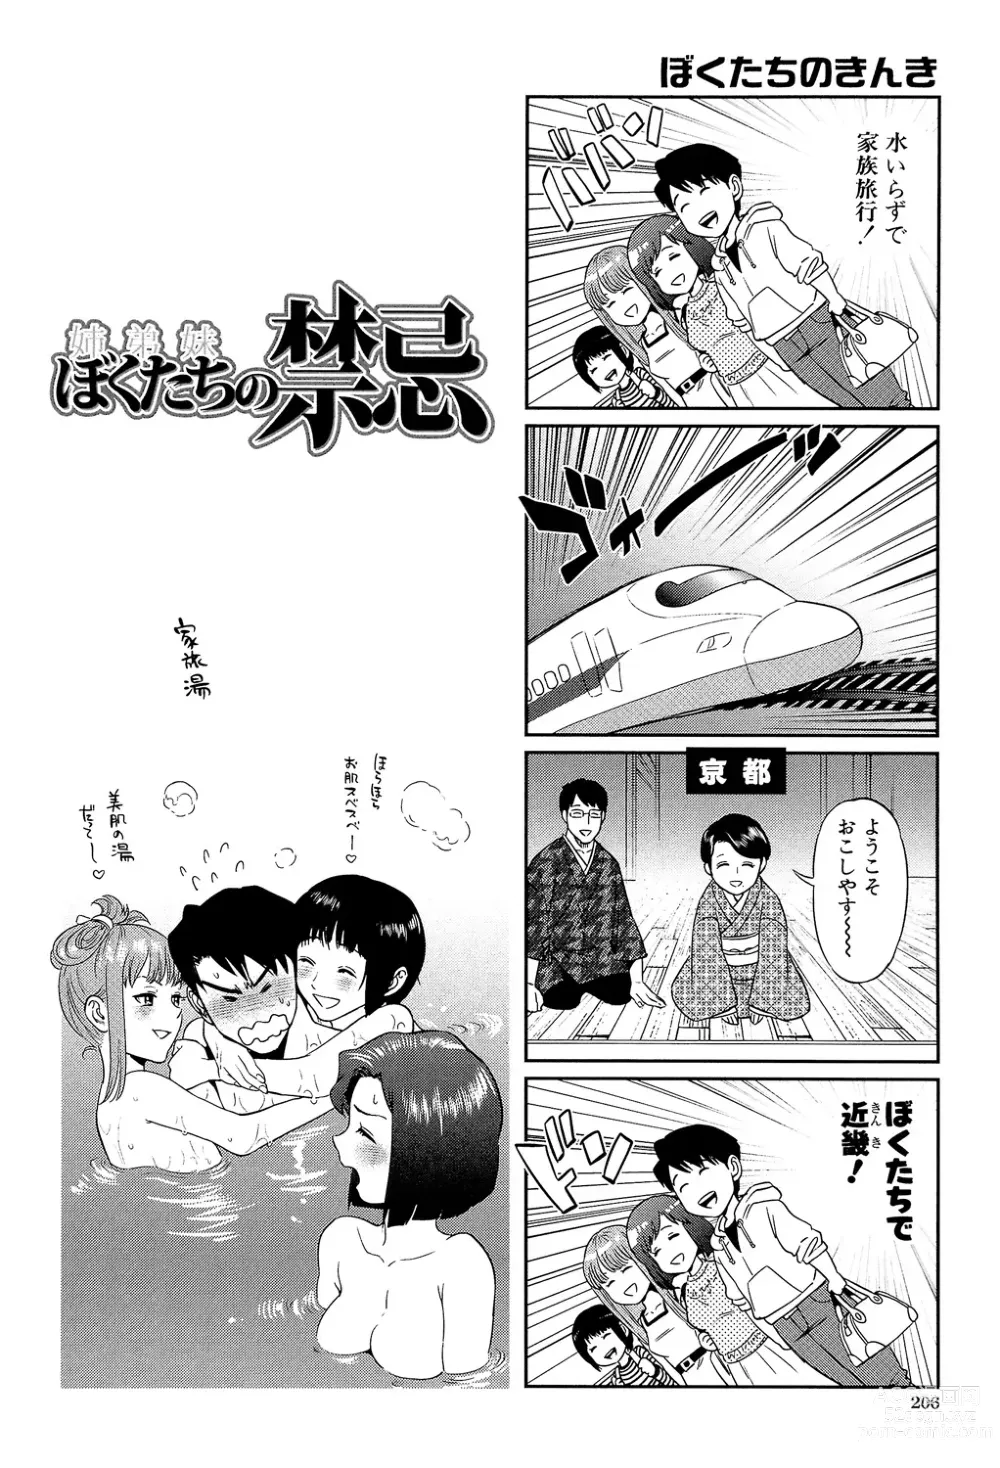 Page 206 of manga Boku-tachi no Kinki